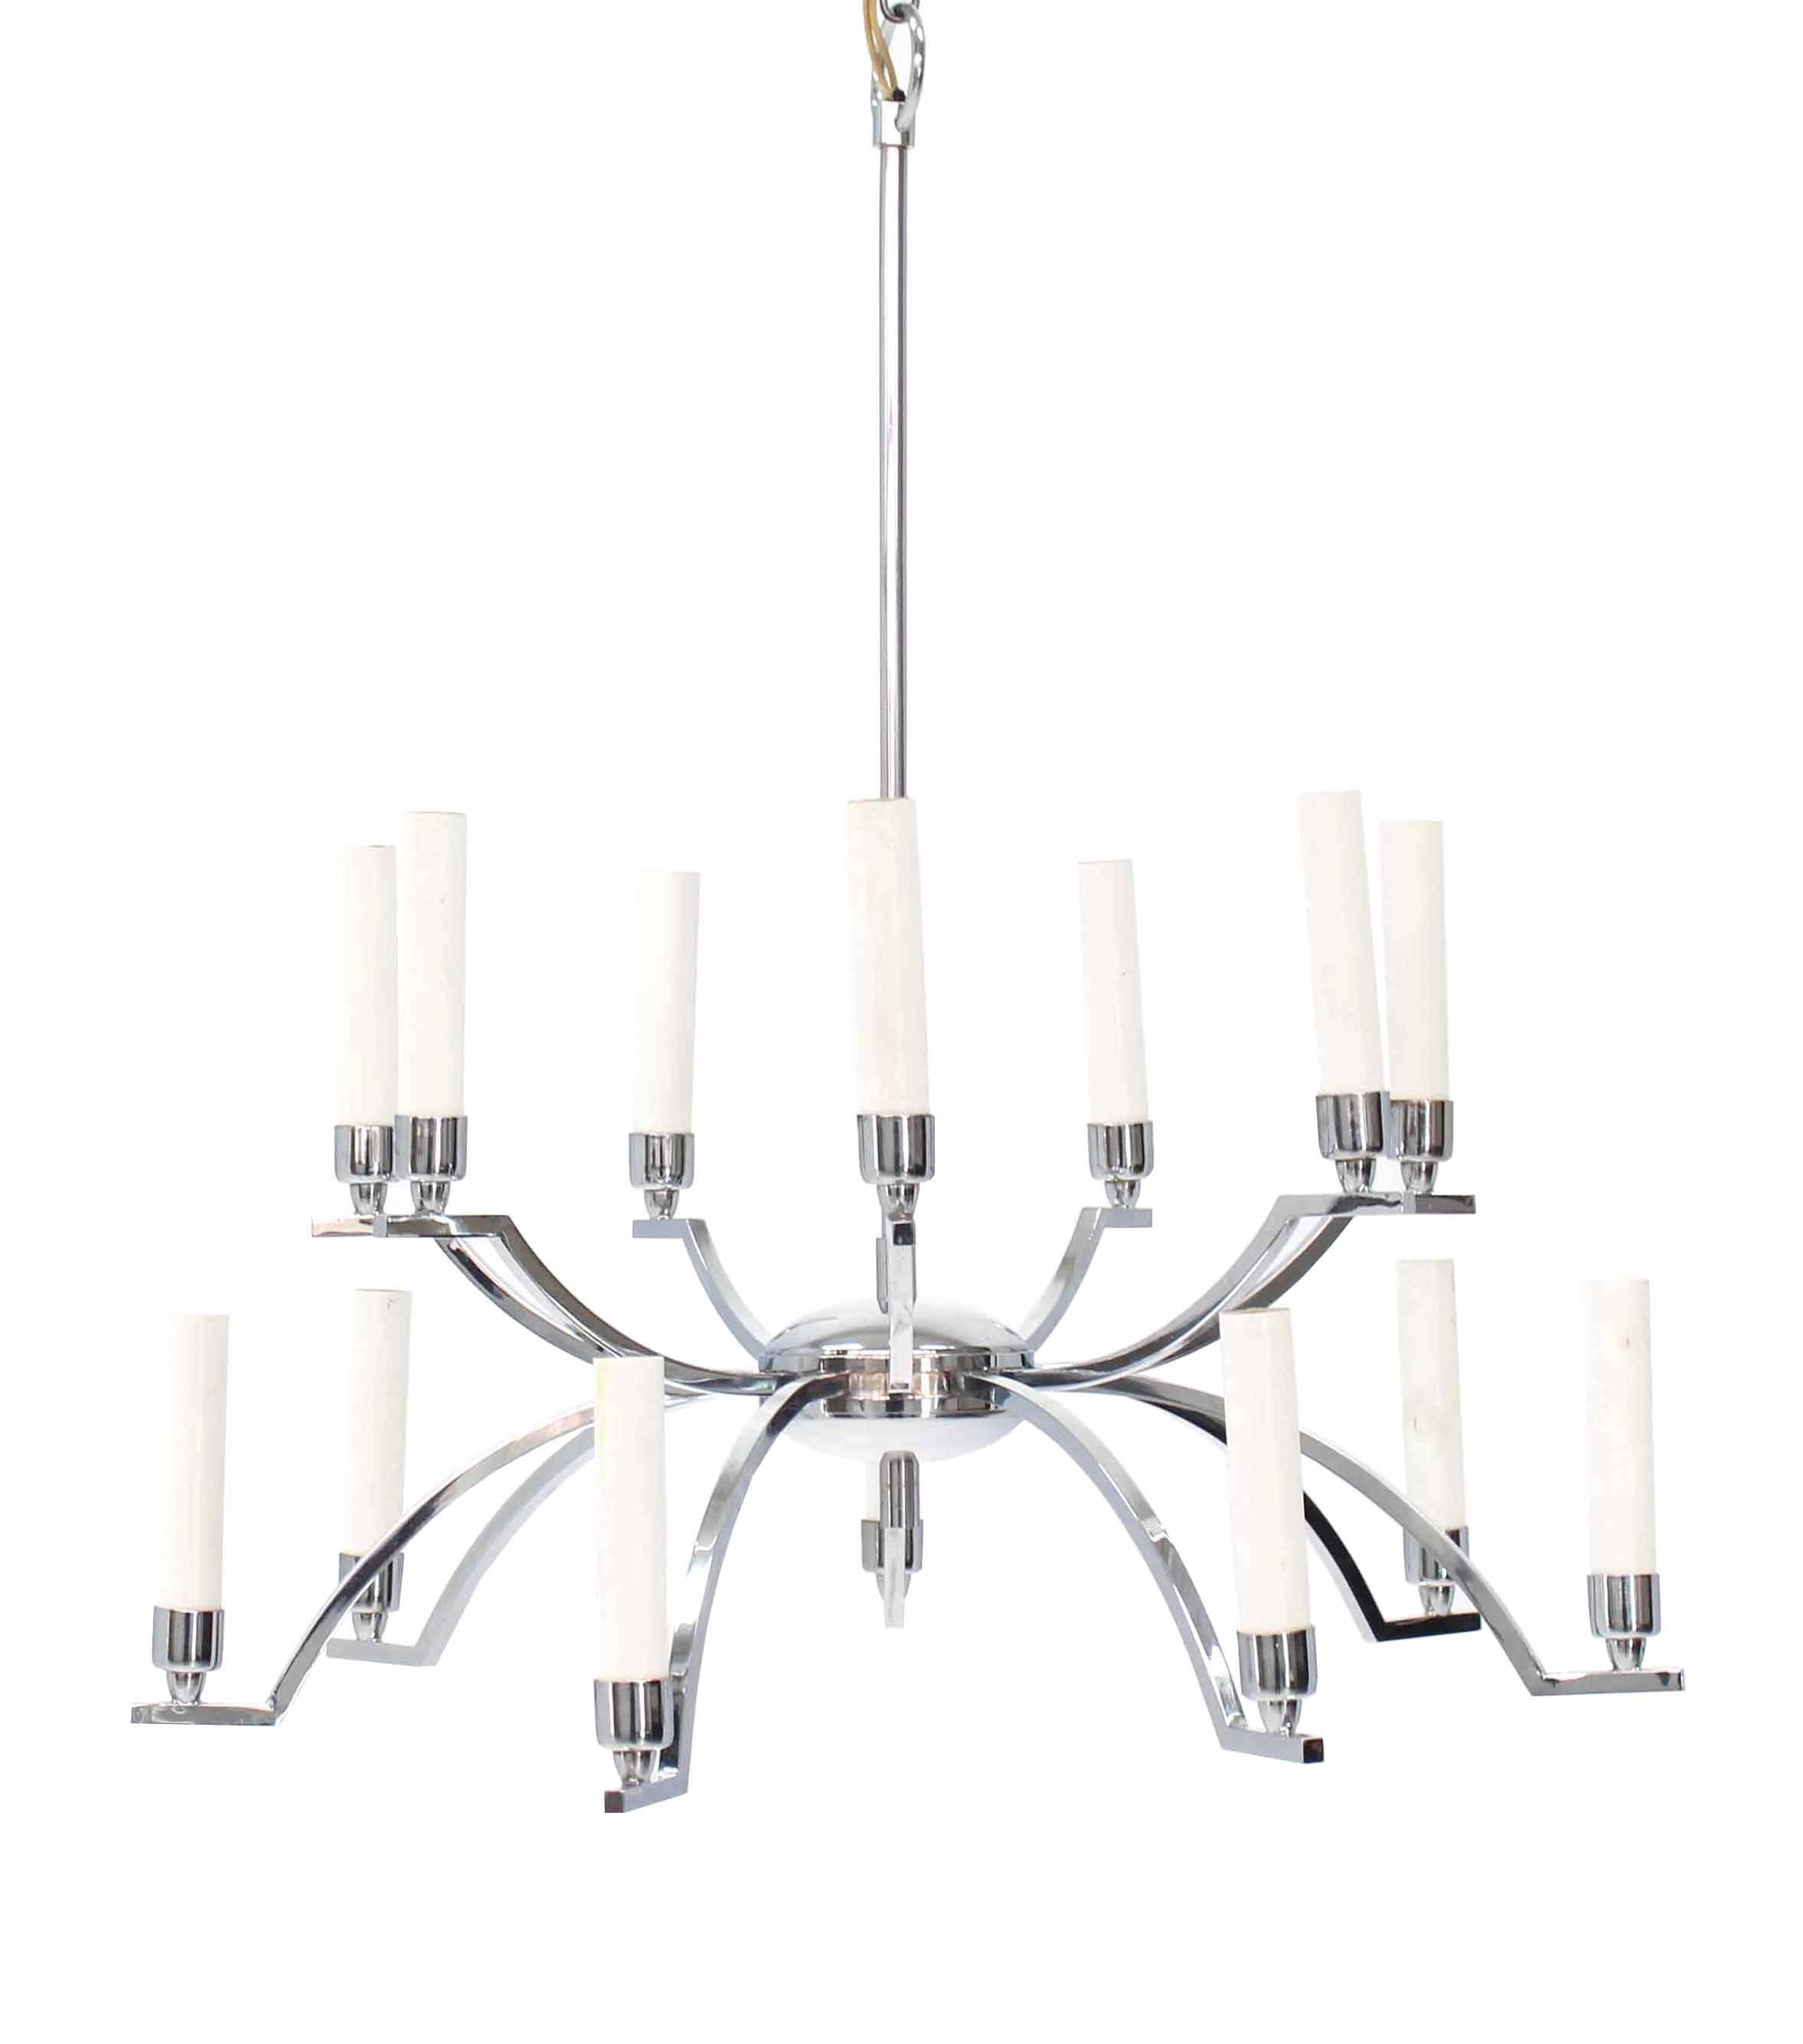 Very nice Mid-Century Modern twelve "candles" light fixture chandelier.